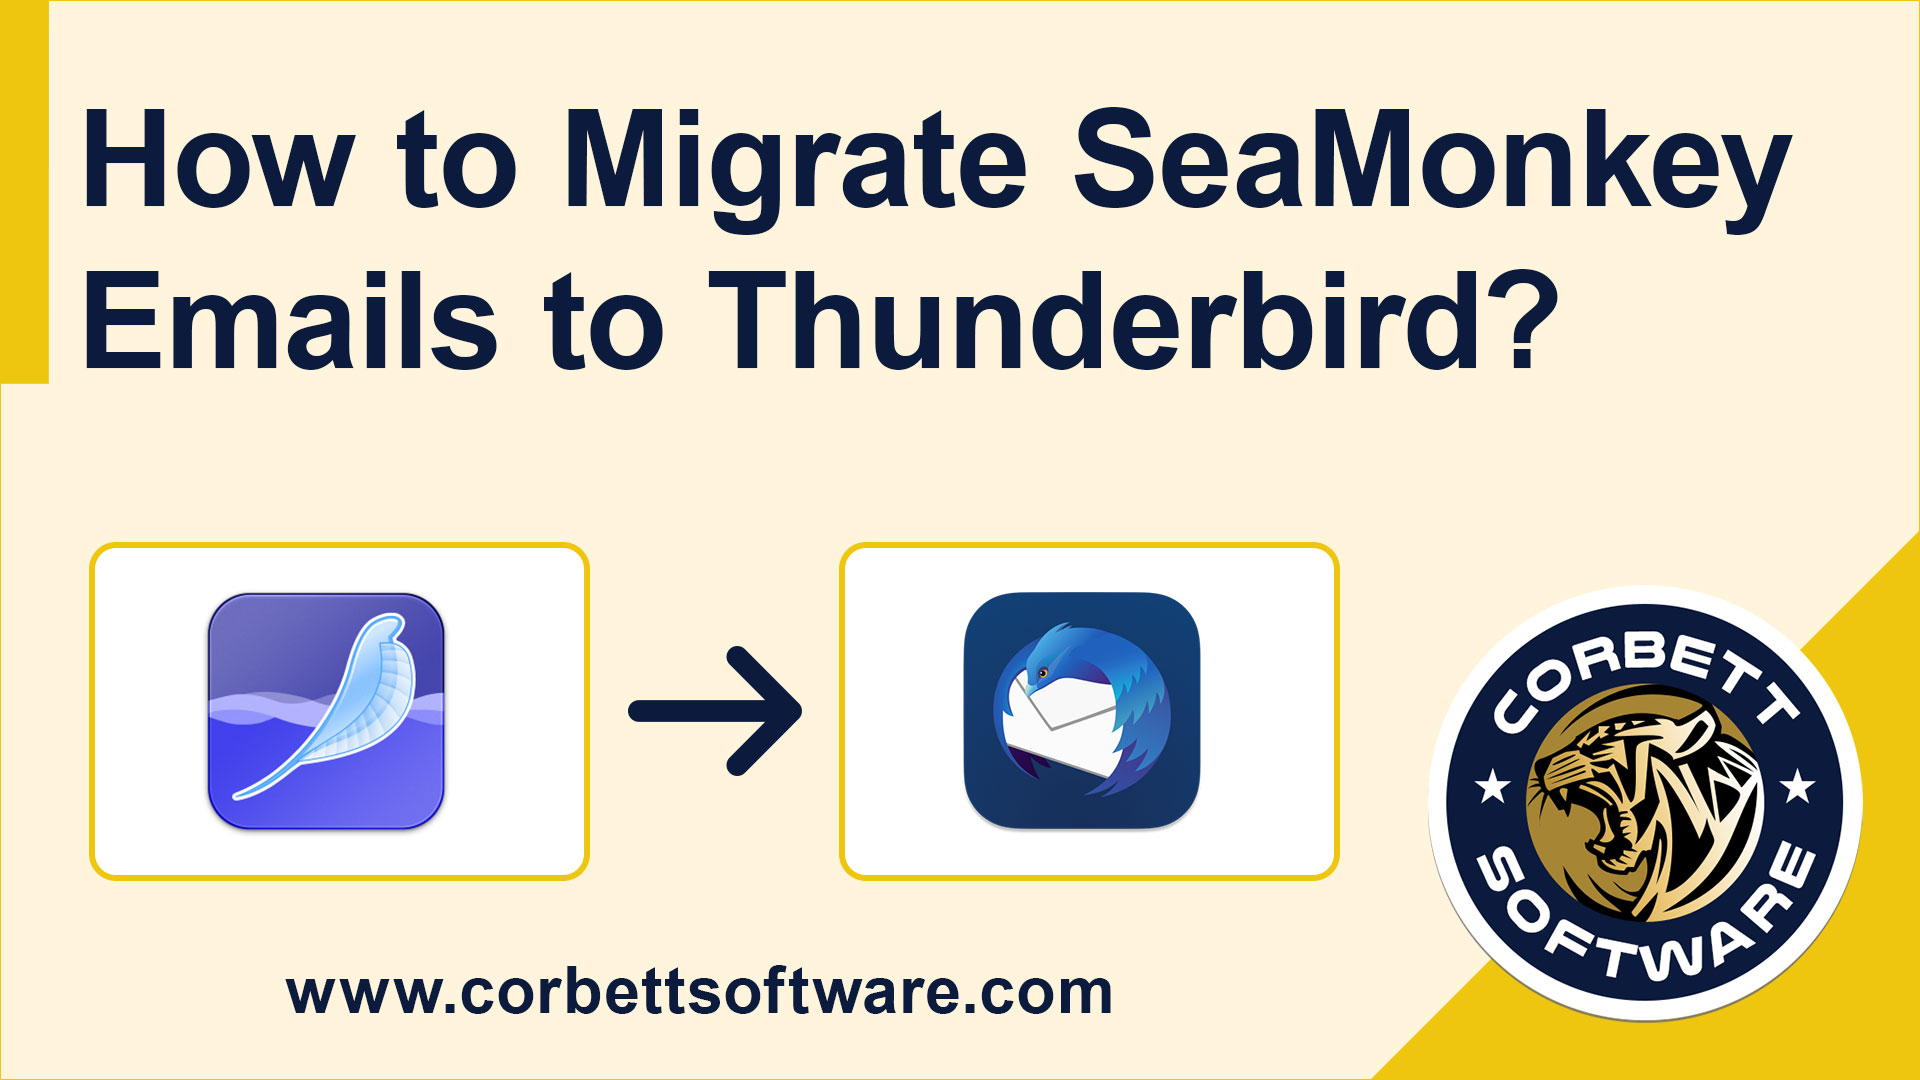 Migrate SeaMonkey to Thunderbird